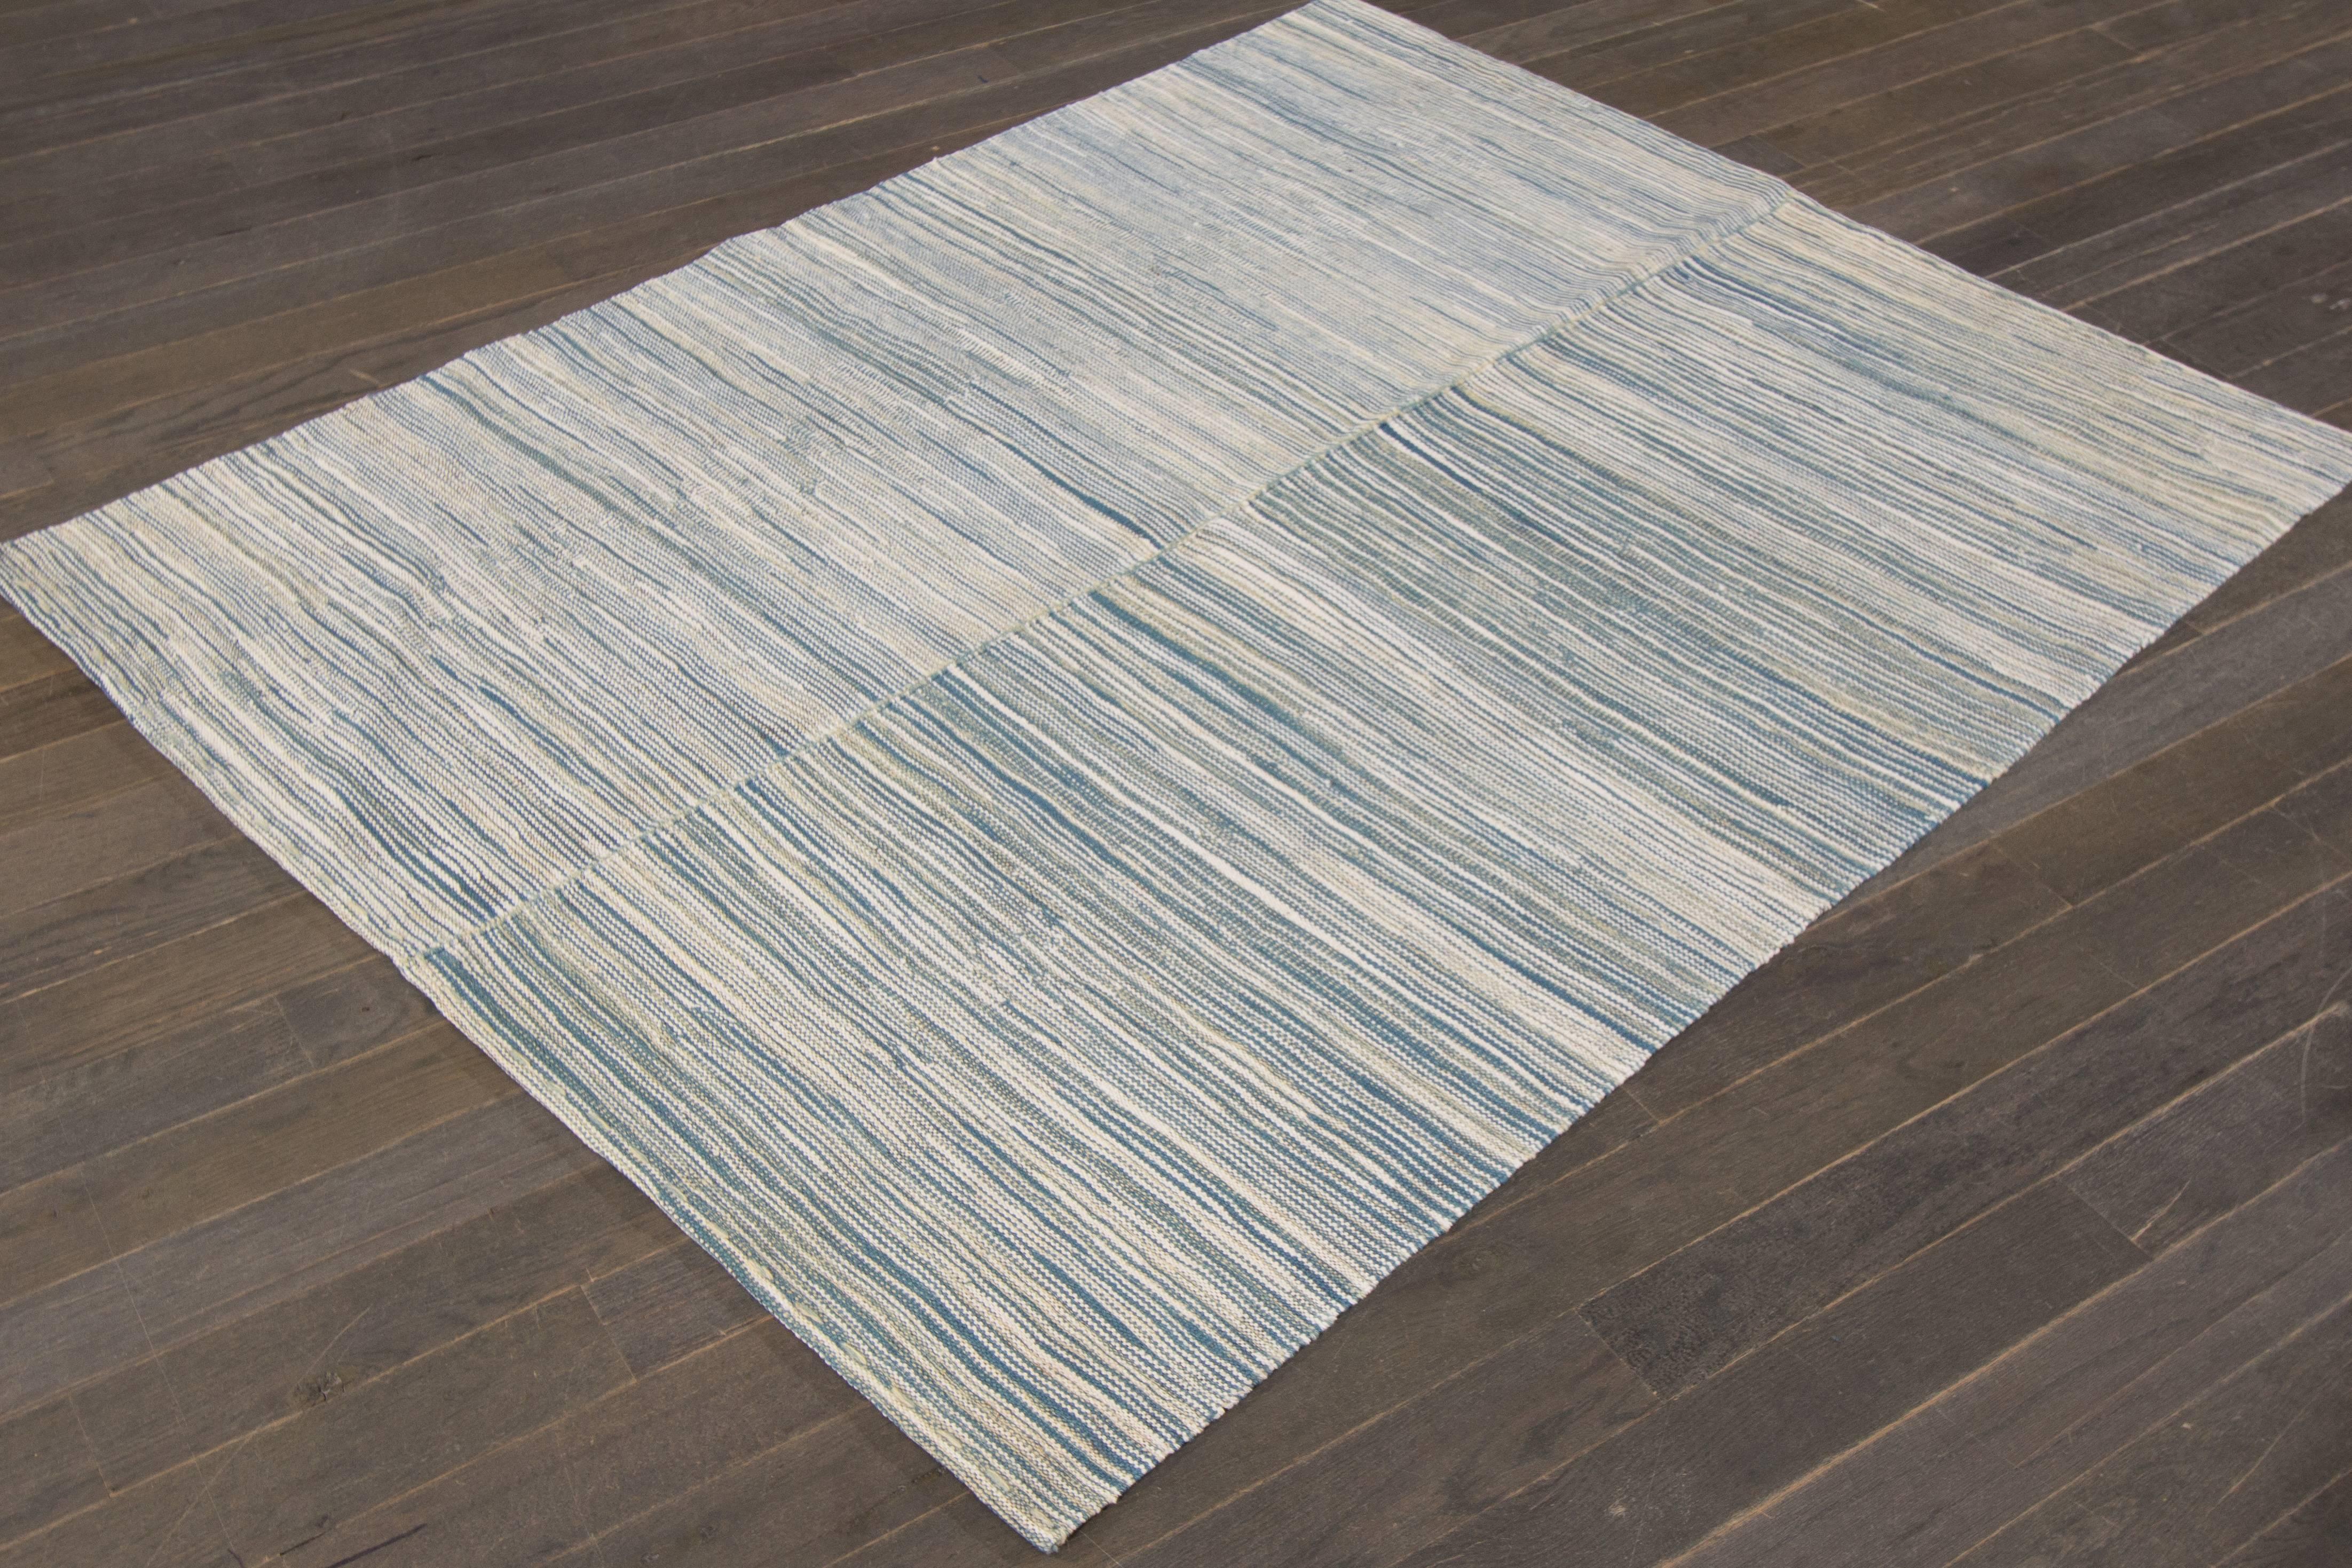 zeitgenössischer türkischer Kelim-Teppich des 21. Jahrhunderts mit einem hellblauen und elfenbeinfarbenen, strukturierten Gesamtbild. Maße 4,01x5,02.